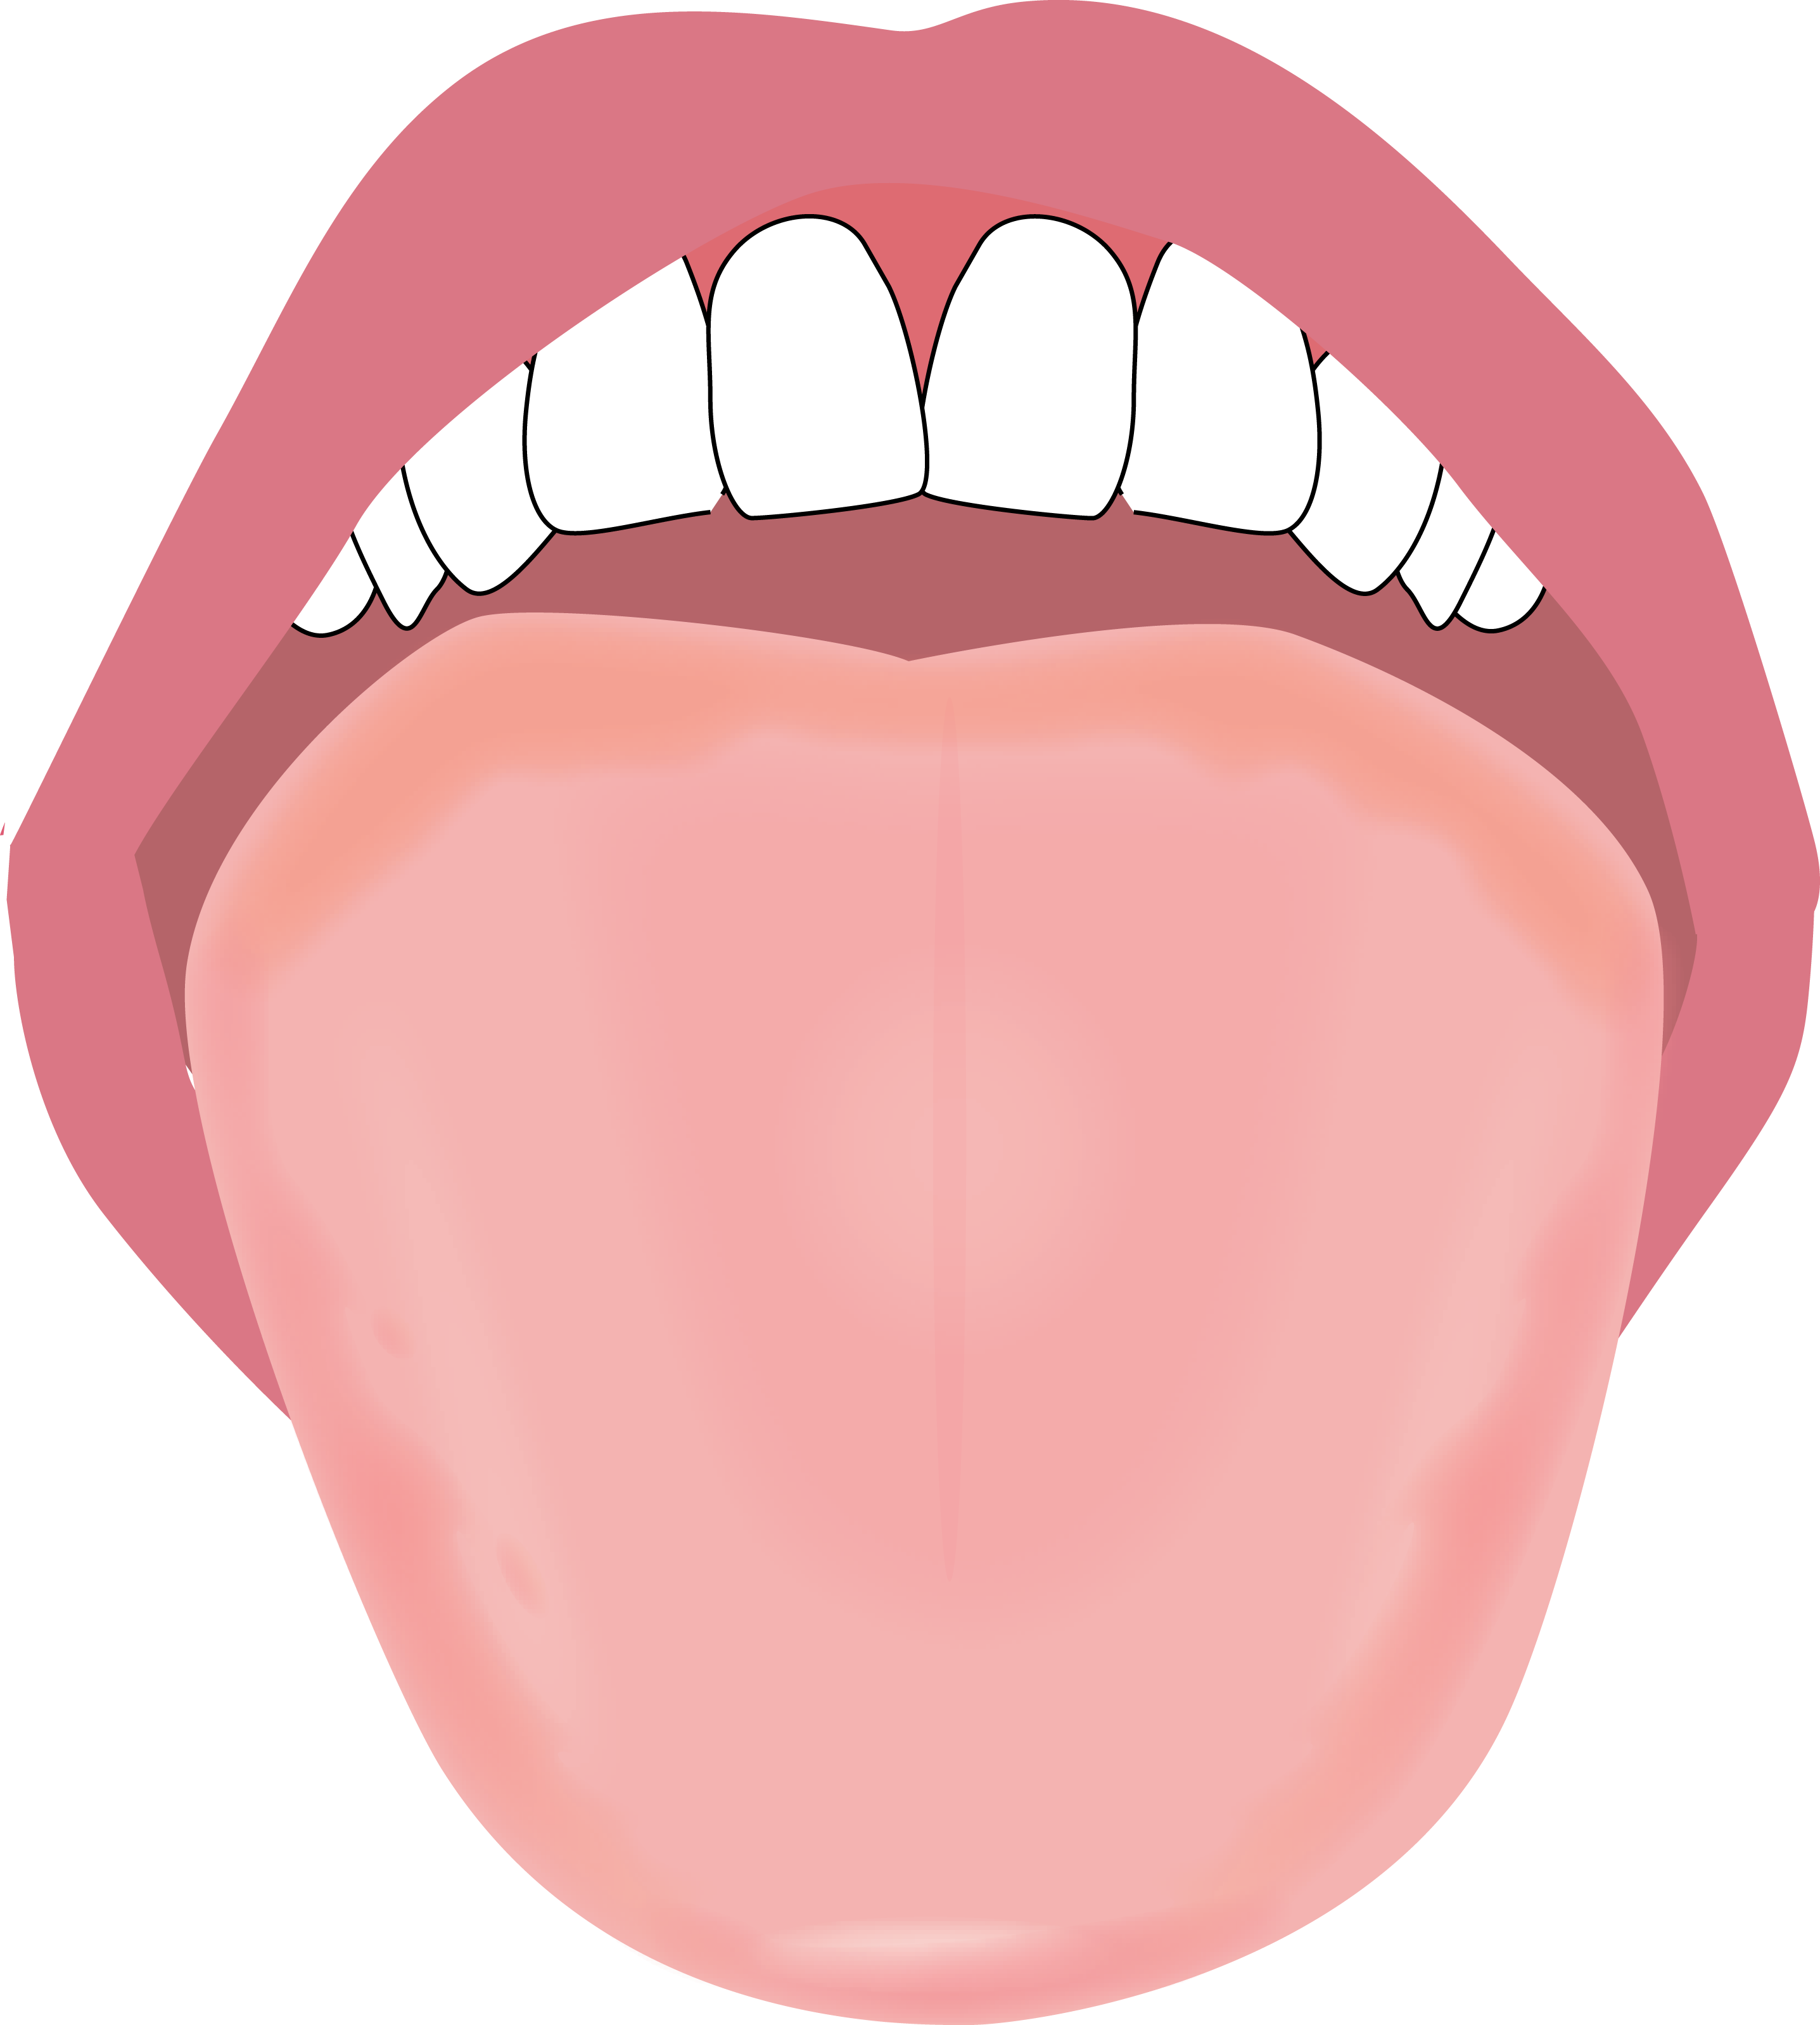 舌のイラスト描きました